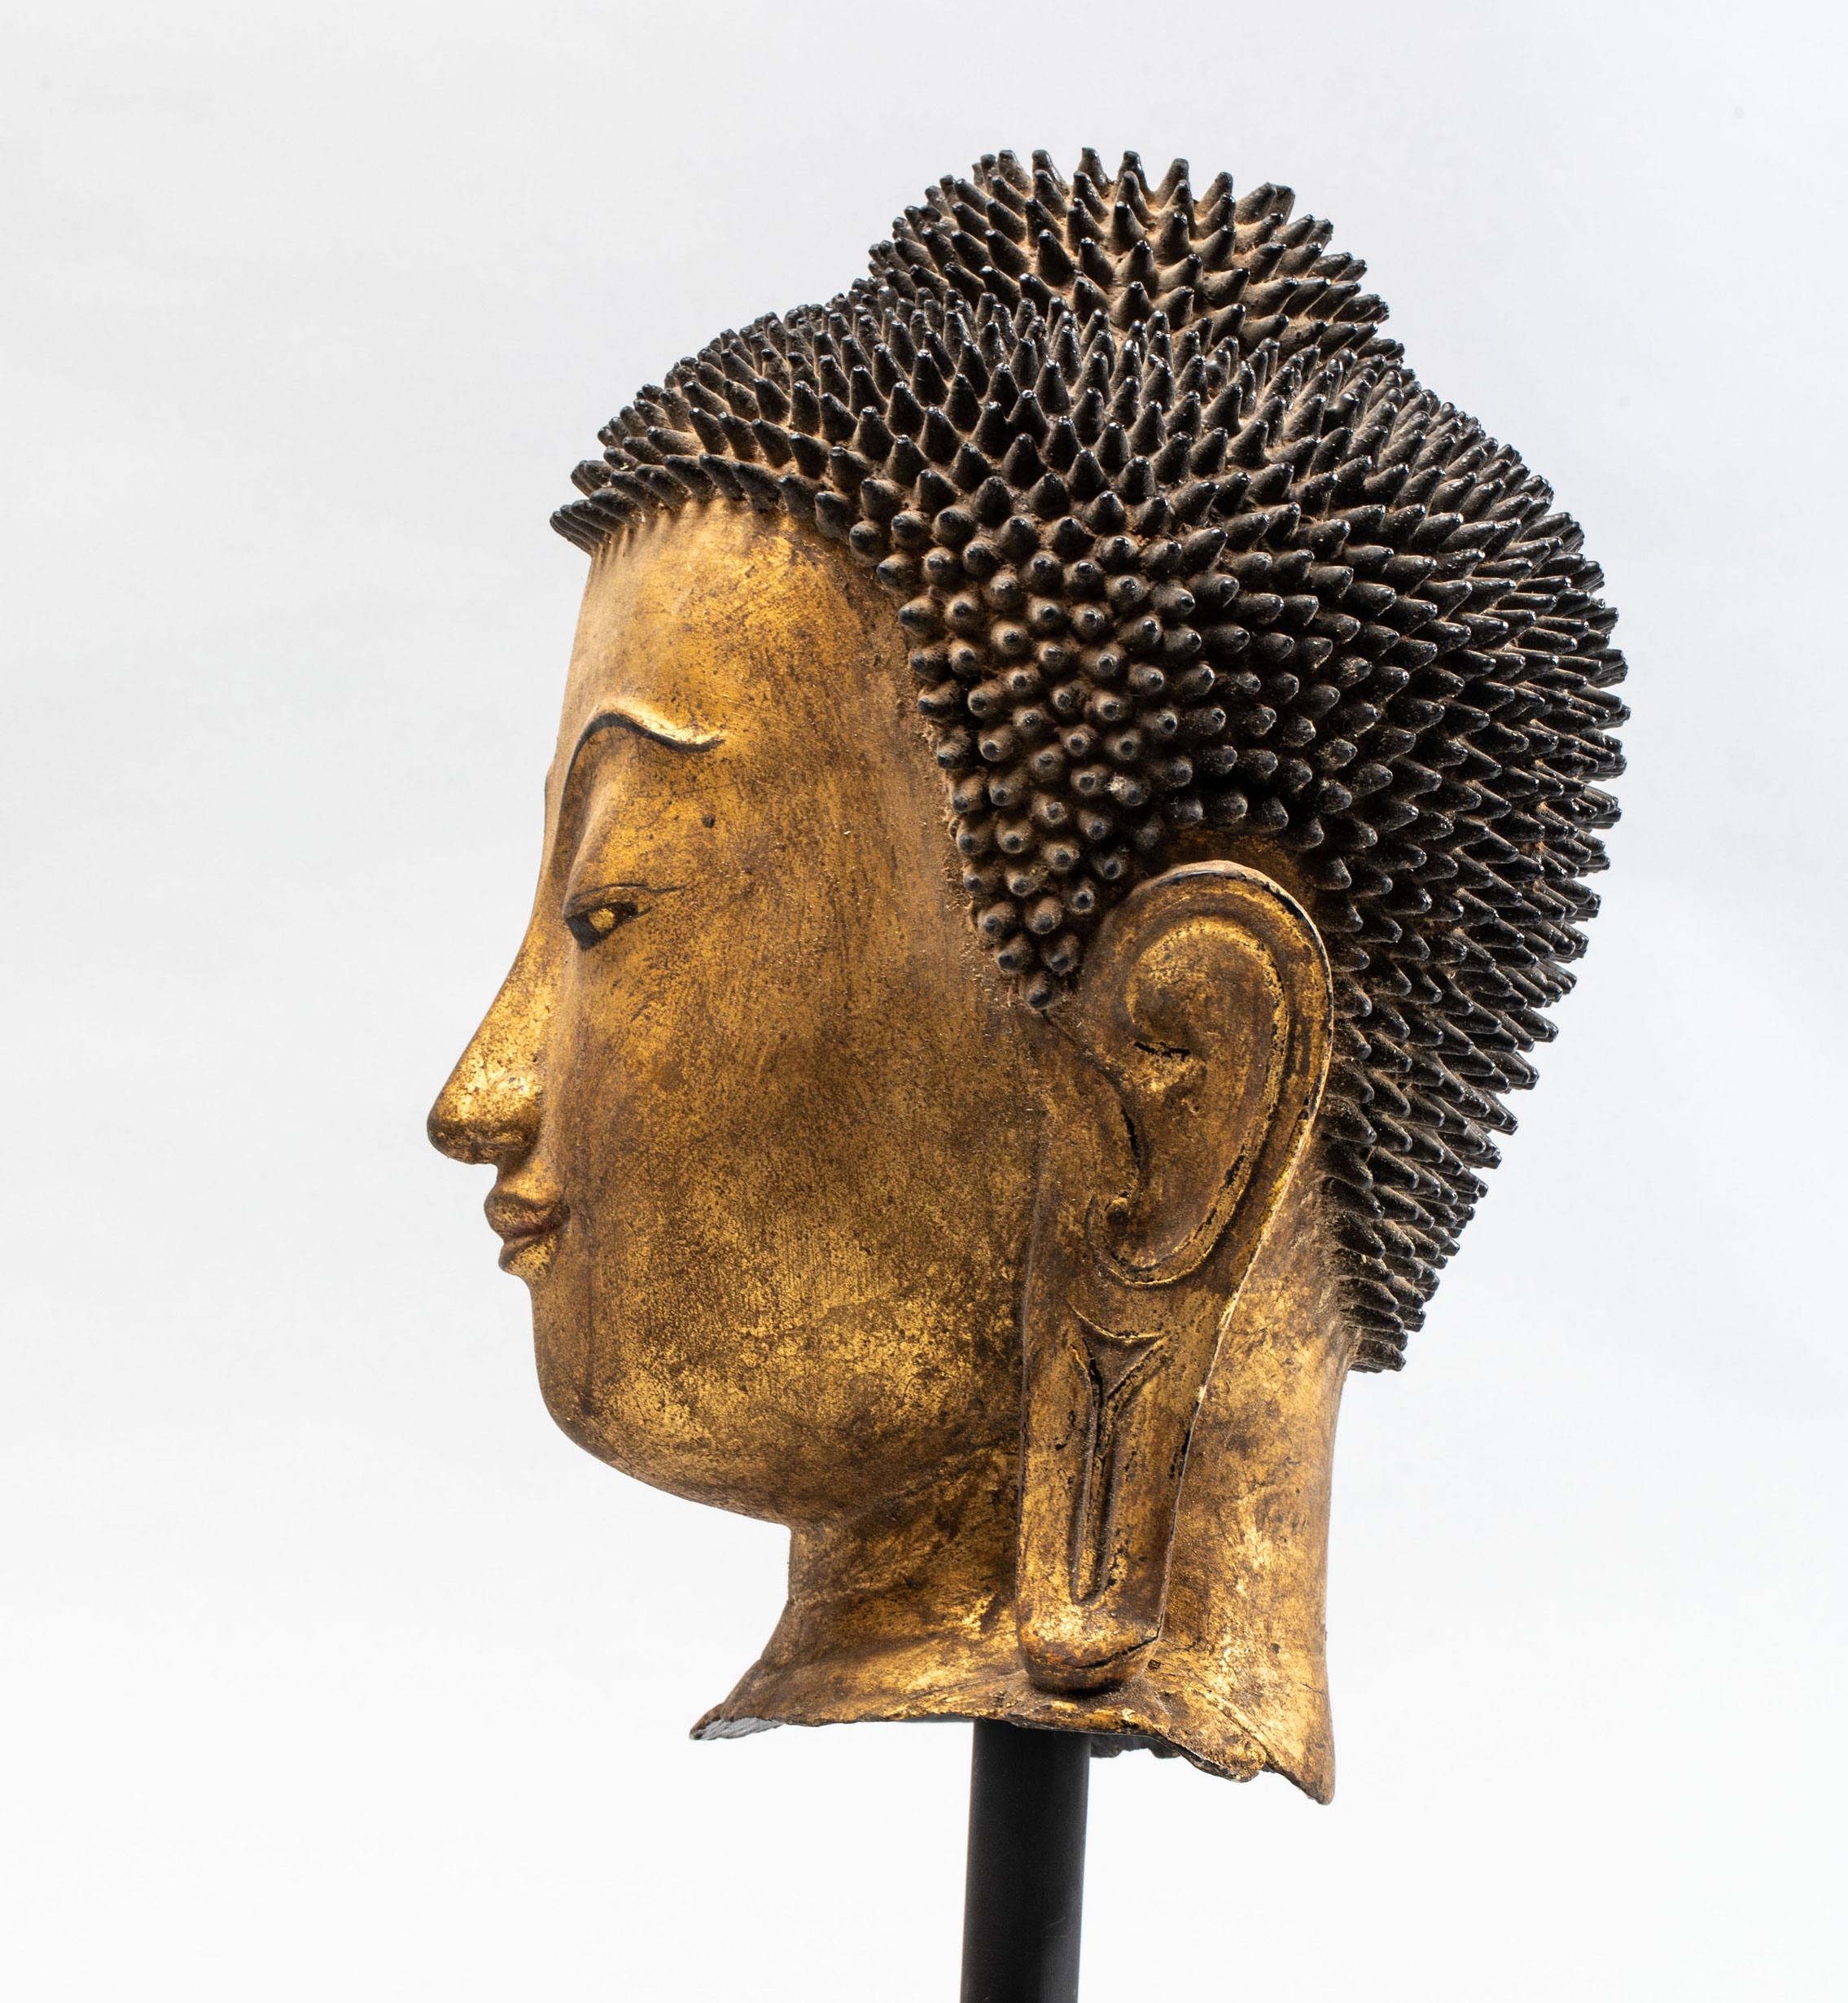 Tête de Buddha coiffée de fines bouclettes hérissées surmontée de la protubérance crânienne ushnisha - Image 3 of 4